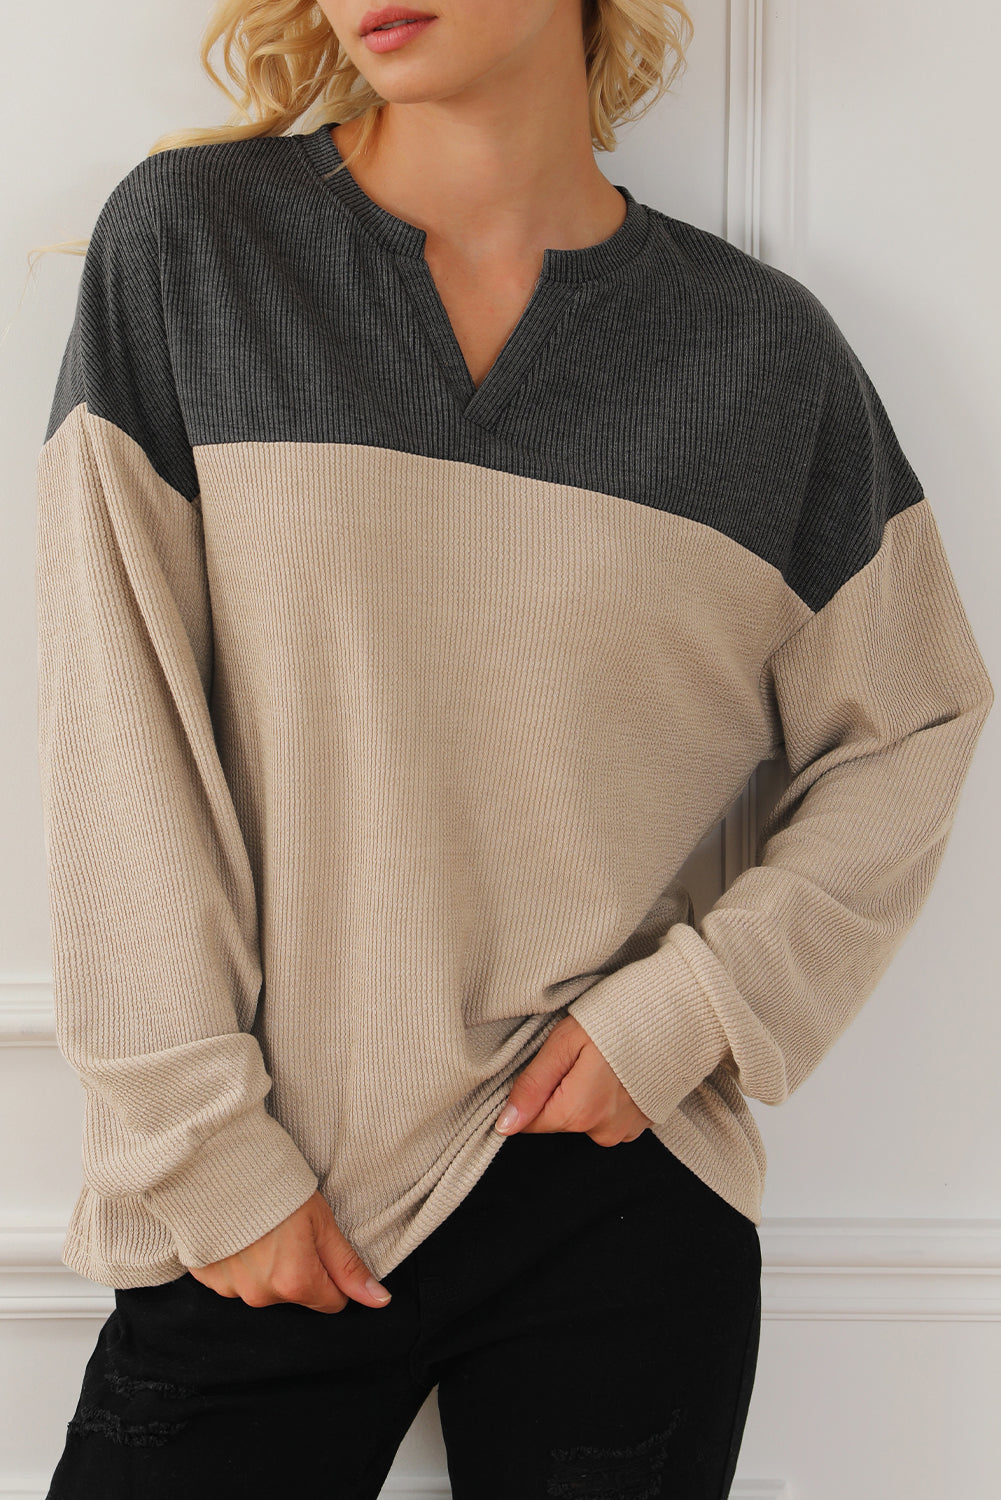 Karbongraues Cord-Sweatshirt mit gekerbtem Ausschnitt und Farbblock